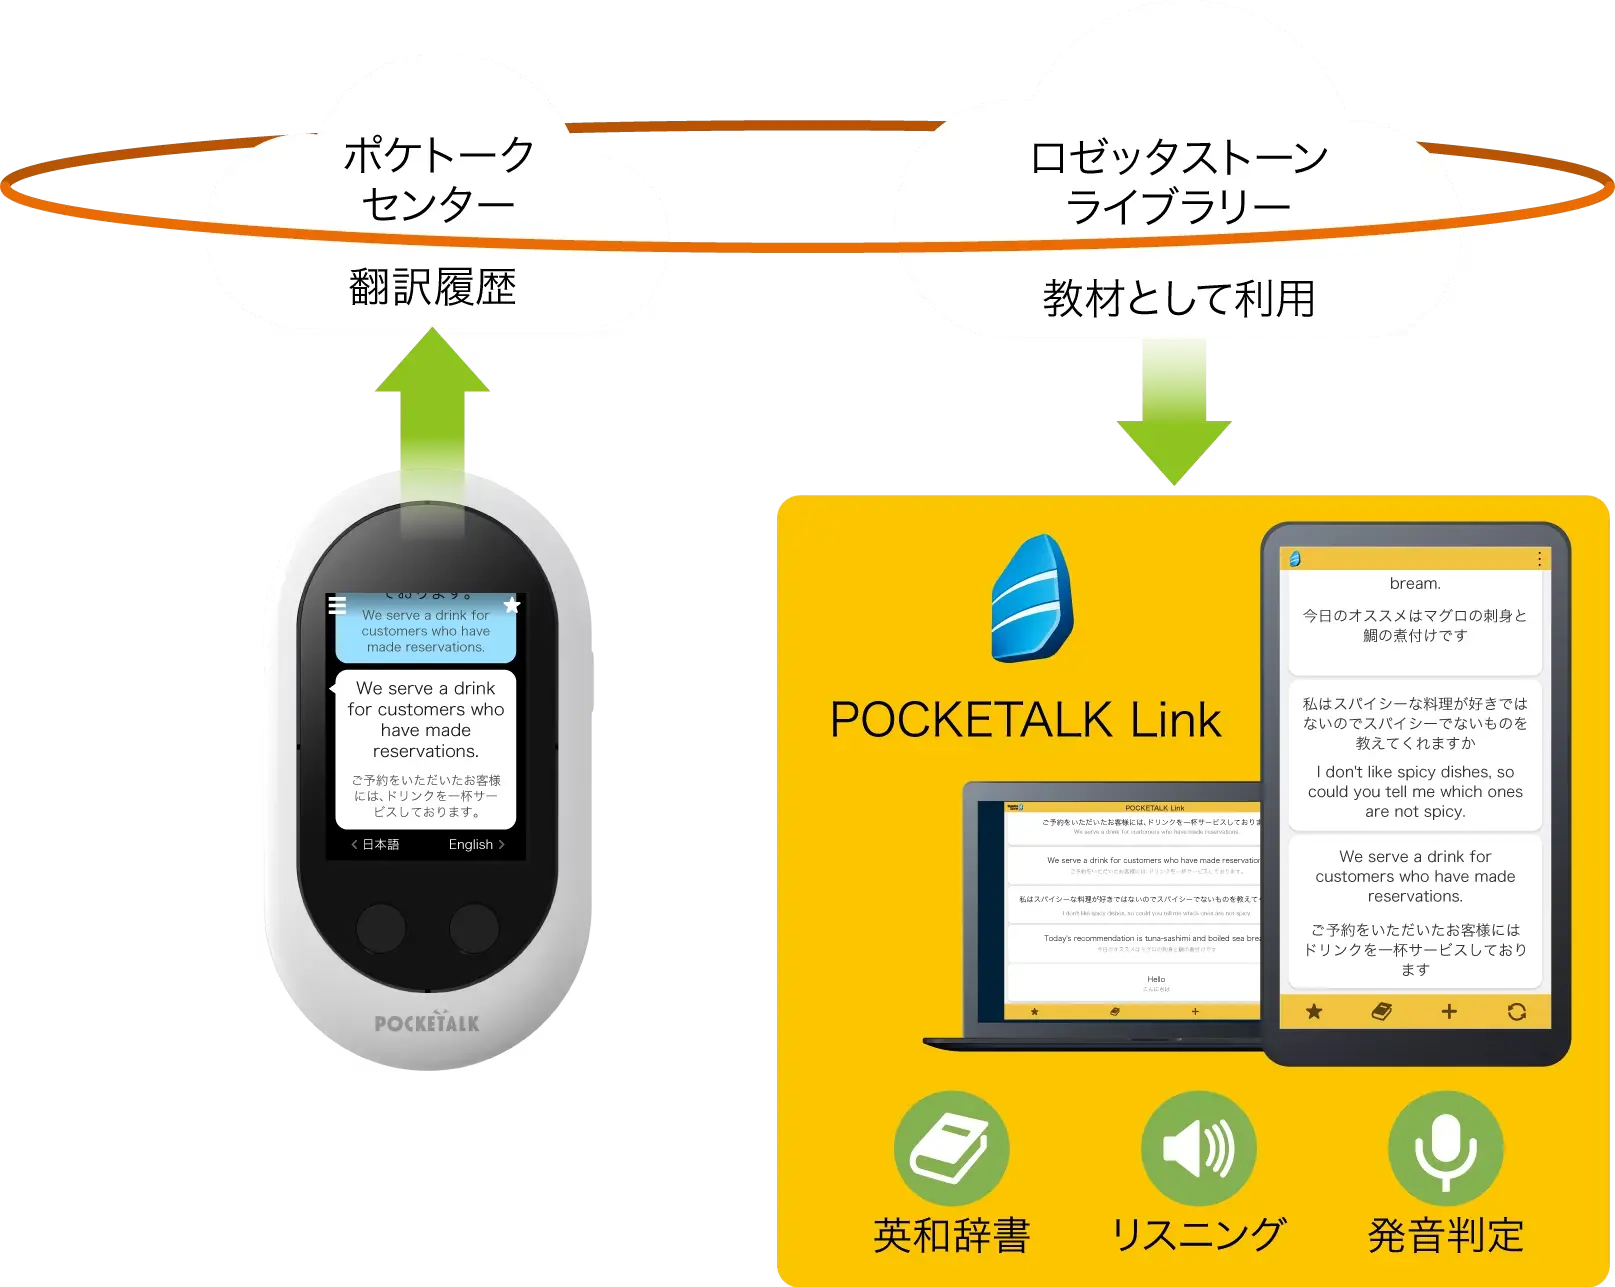 ポケトークと連携する語学アプリ「POCKETALK Link（ポケトーク・リンク）」を無料で提供しています。